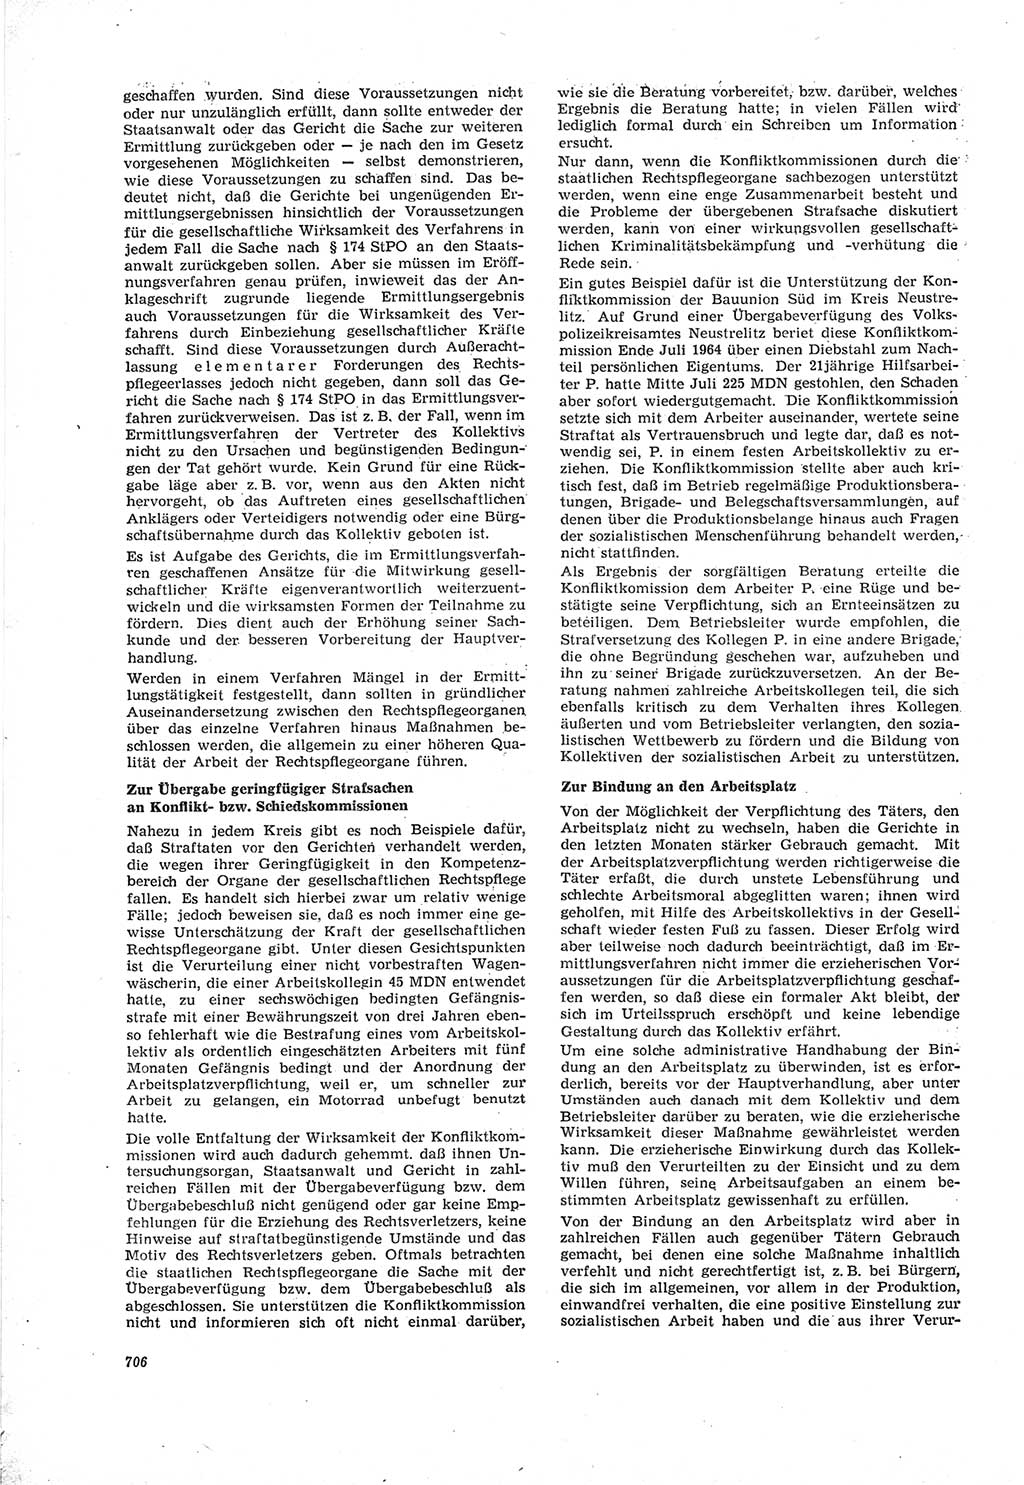 Neue Justiz (NJ), Zeitschrift für Recht und Rechtswissenschaft [Deutsche Demokratische Republik (DDR)], 18. Jahrgang 1964, Seite 706 (NJ DDR 1964, S. 706)